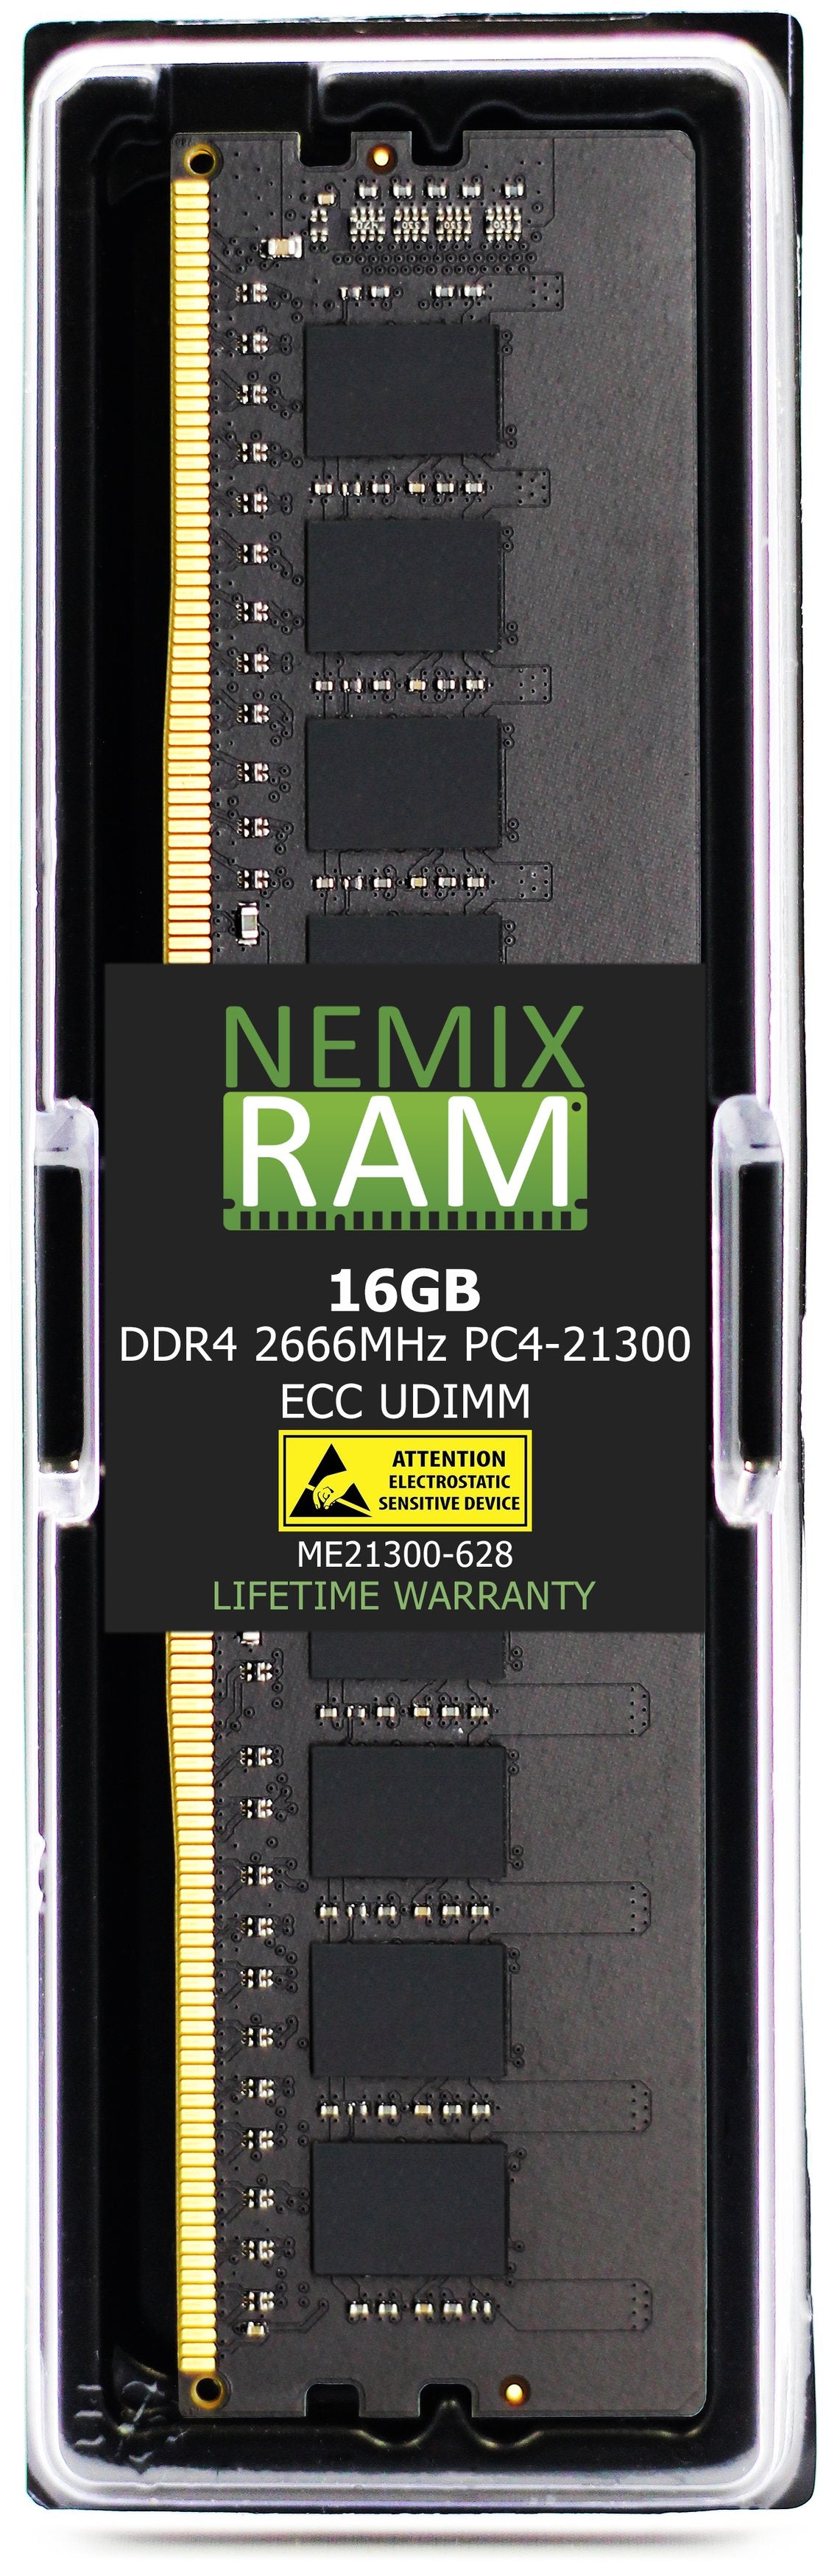 Hynix HMA82GU7CJR8N-VK 16GB DDR4 2666MHZ PC4-21300 ECC UDIMM Compatible Memory Module